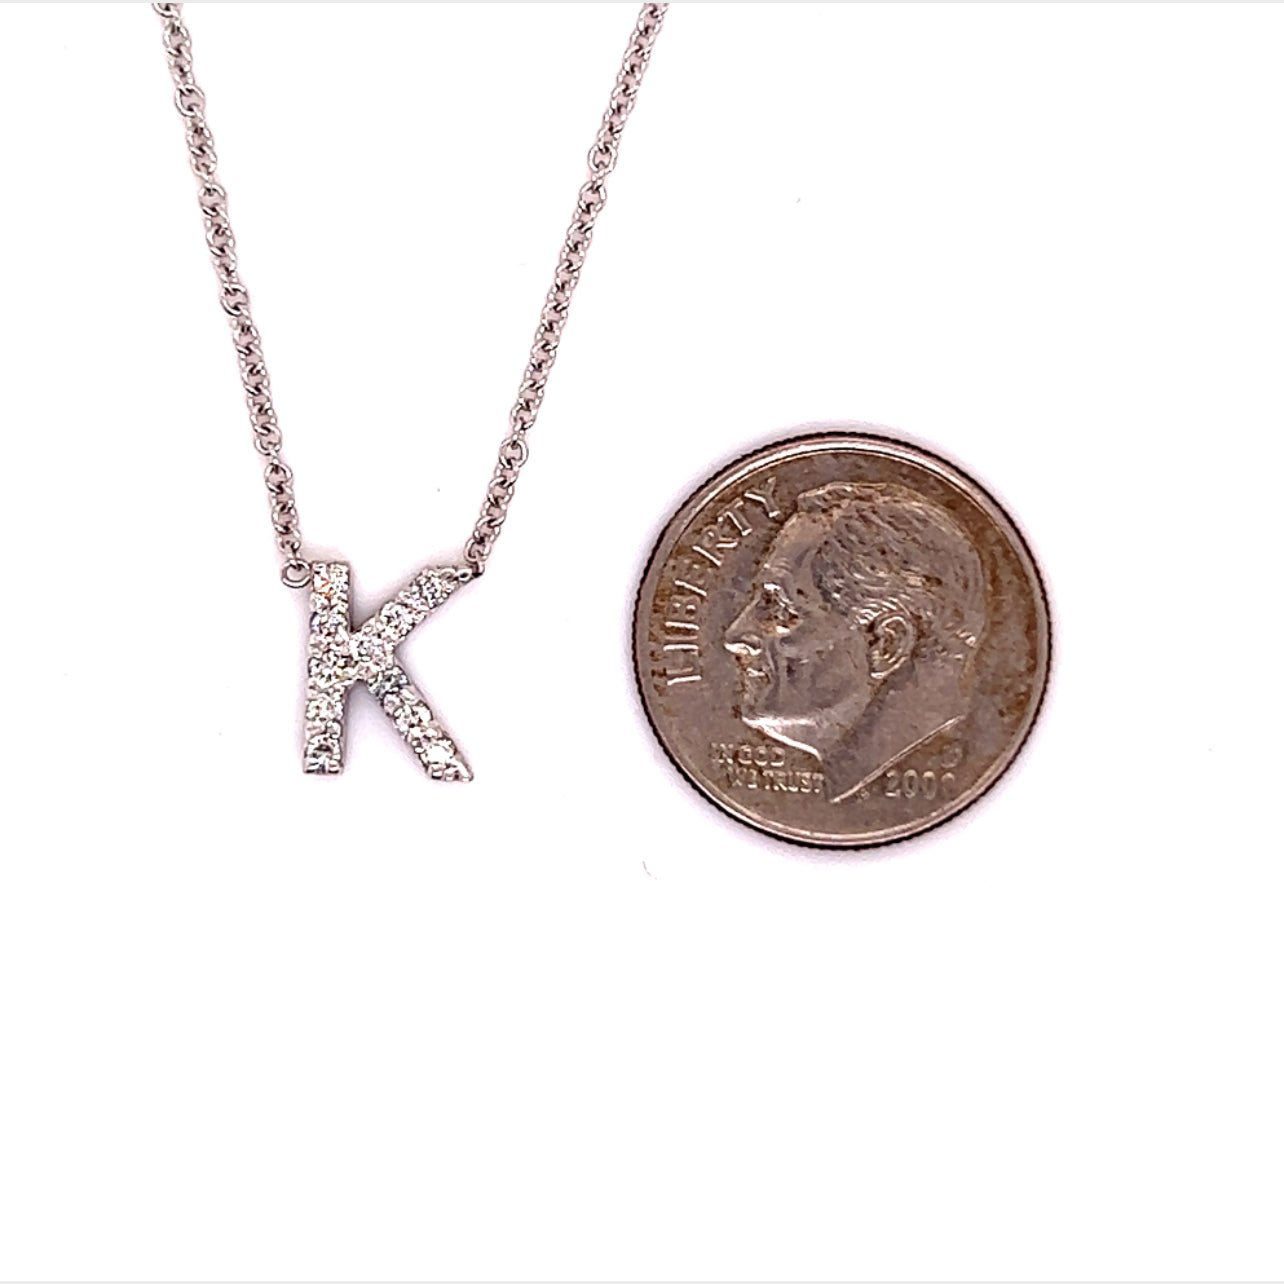 Diamond Letter "K" Pendant Necklace 18" 14k Gold 0.14 TCW Certified $1,950 121275 - Certified Fine Jewelry